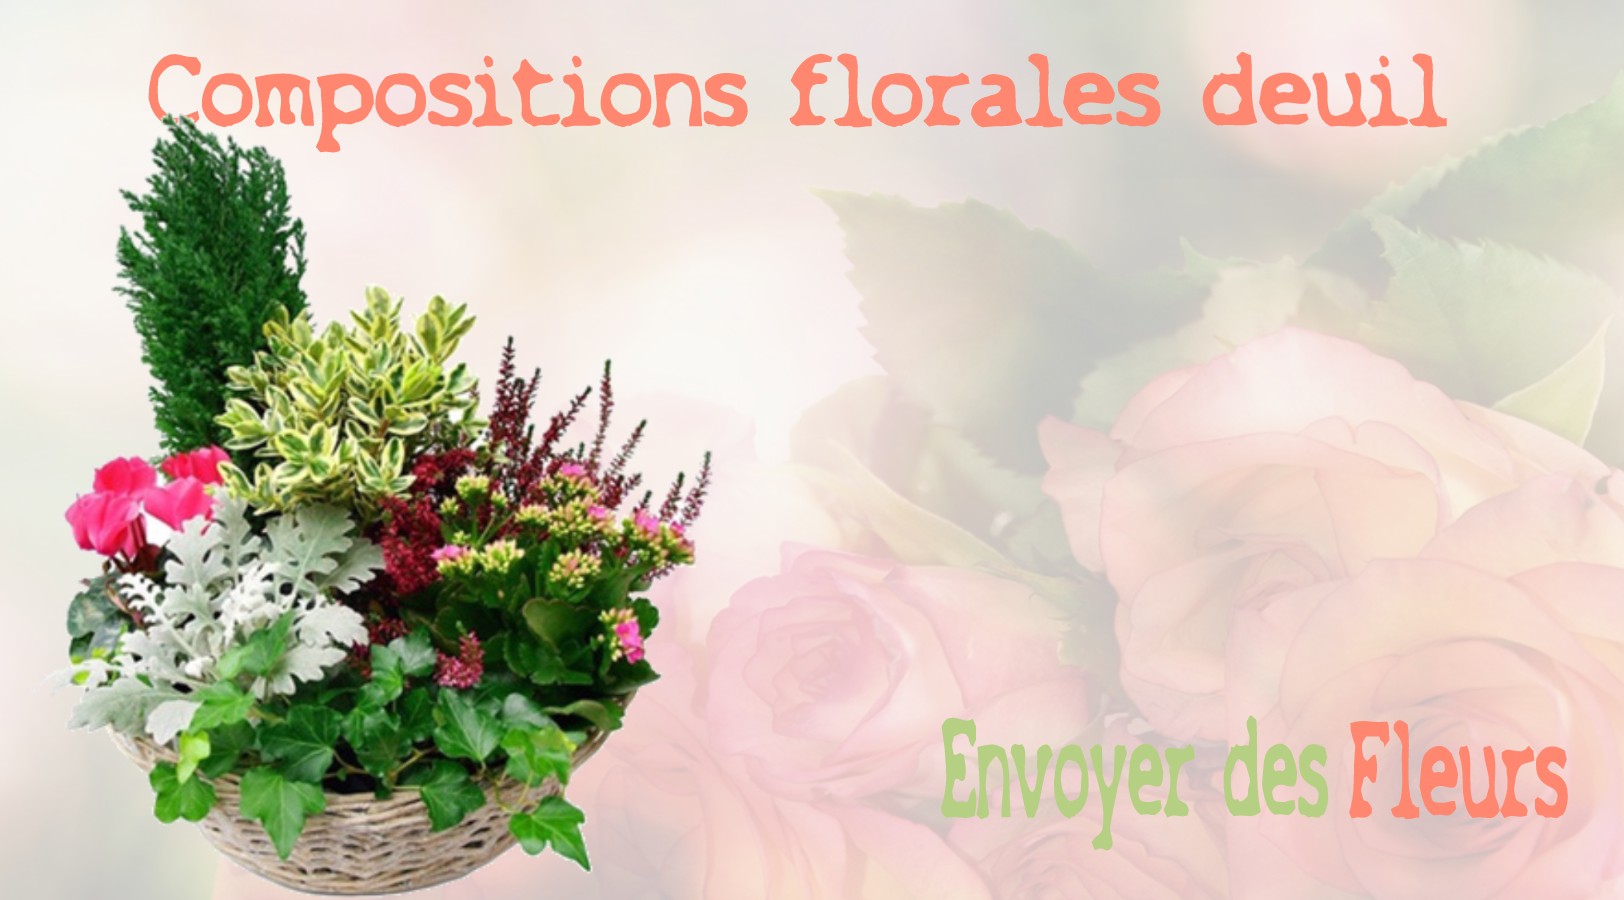 Compositions Florales deuil - LIVRAISON FLEURS DEUIL A PARIS 18